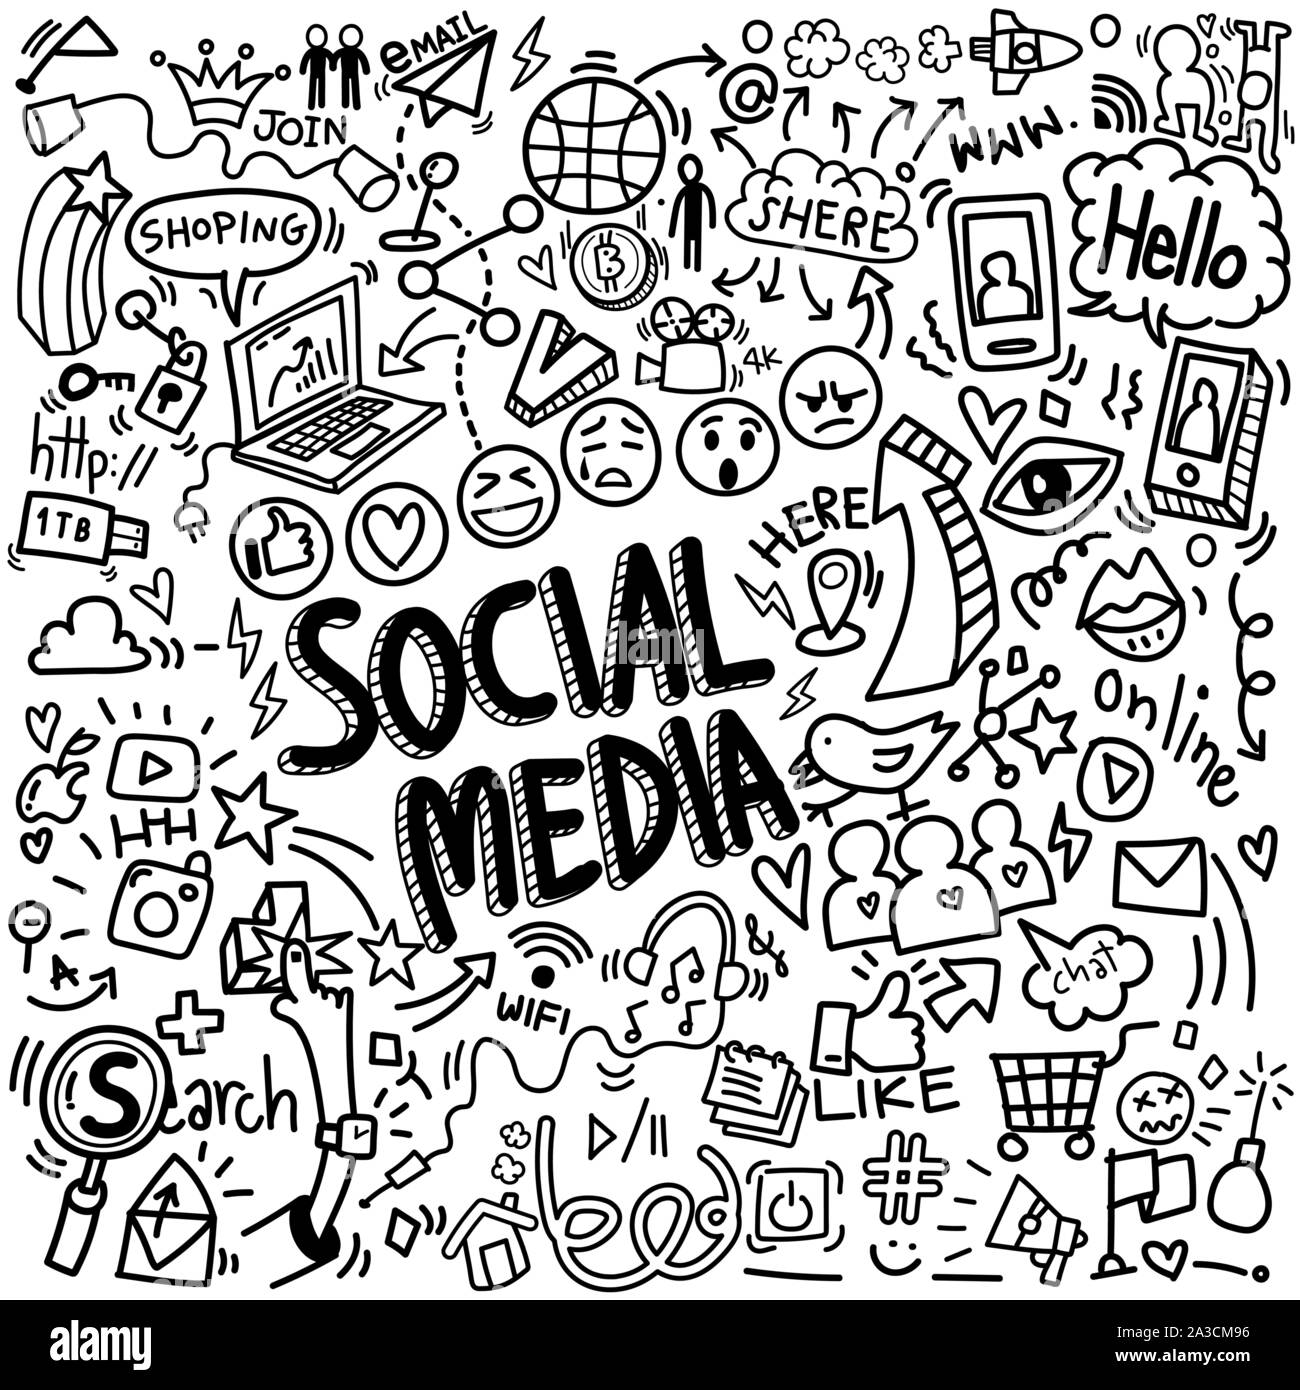 Der Vektor der Objekte und Symbole auf social media Element, doodles Skizze Abbildung Stock Vektor